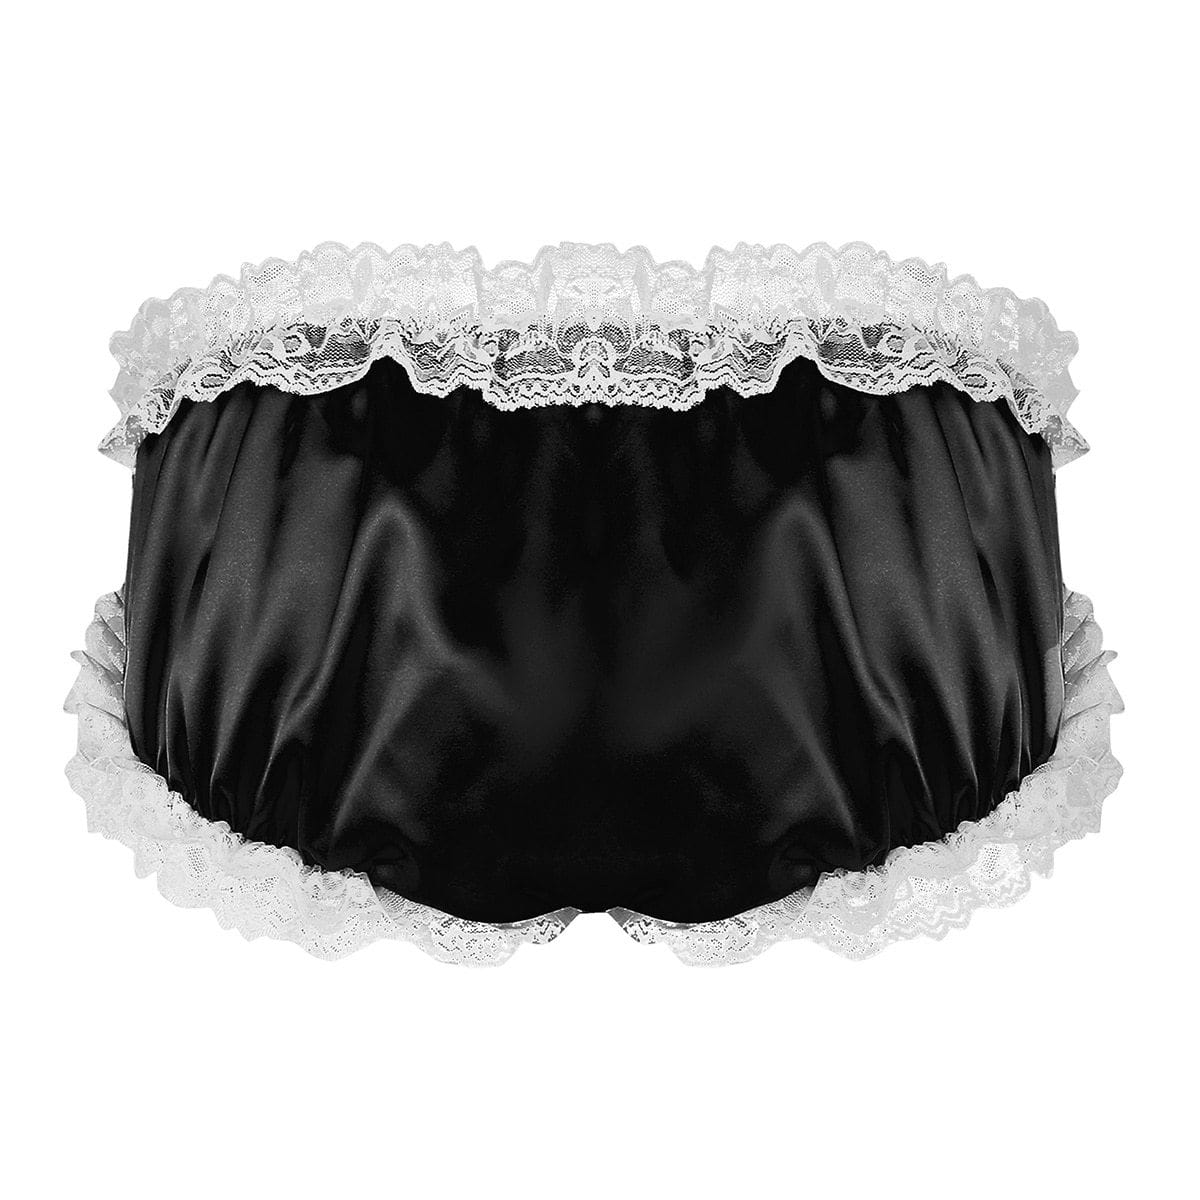 Sissy Lingerie set of 3, Garter Belt, Panties and Bra for Men, Sissy Panties